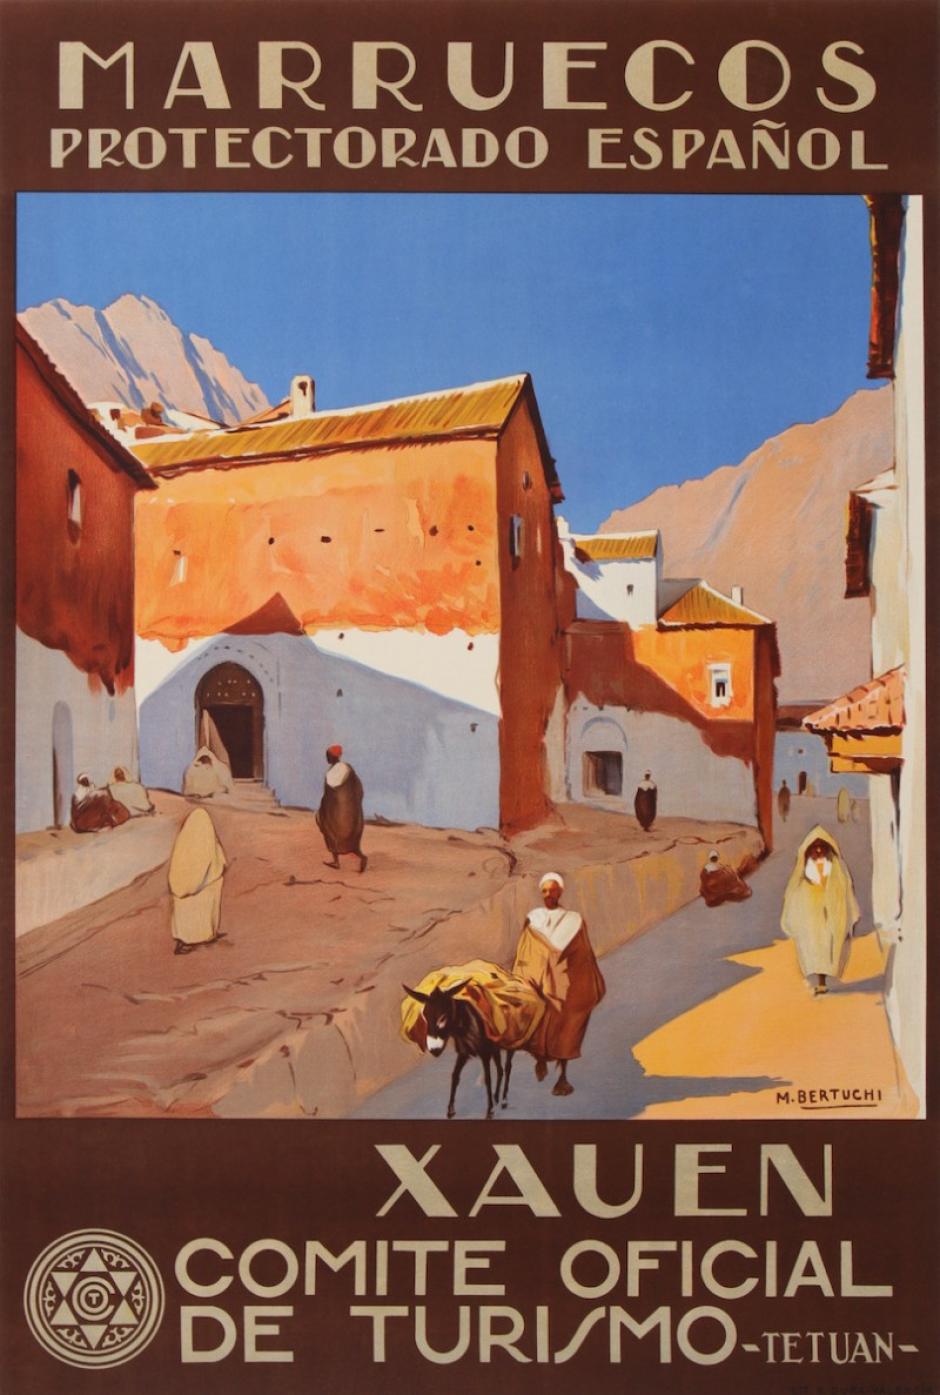 Cartel turístico de Xauen de época del protectorado español de Marruecos